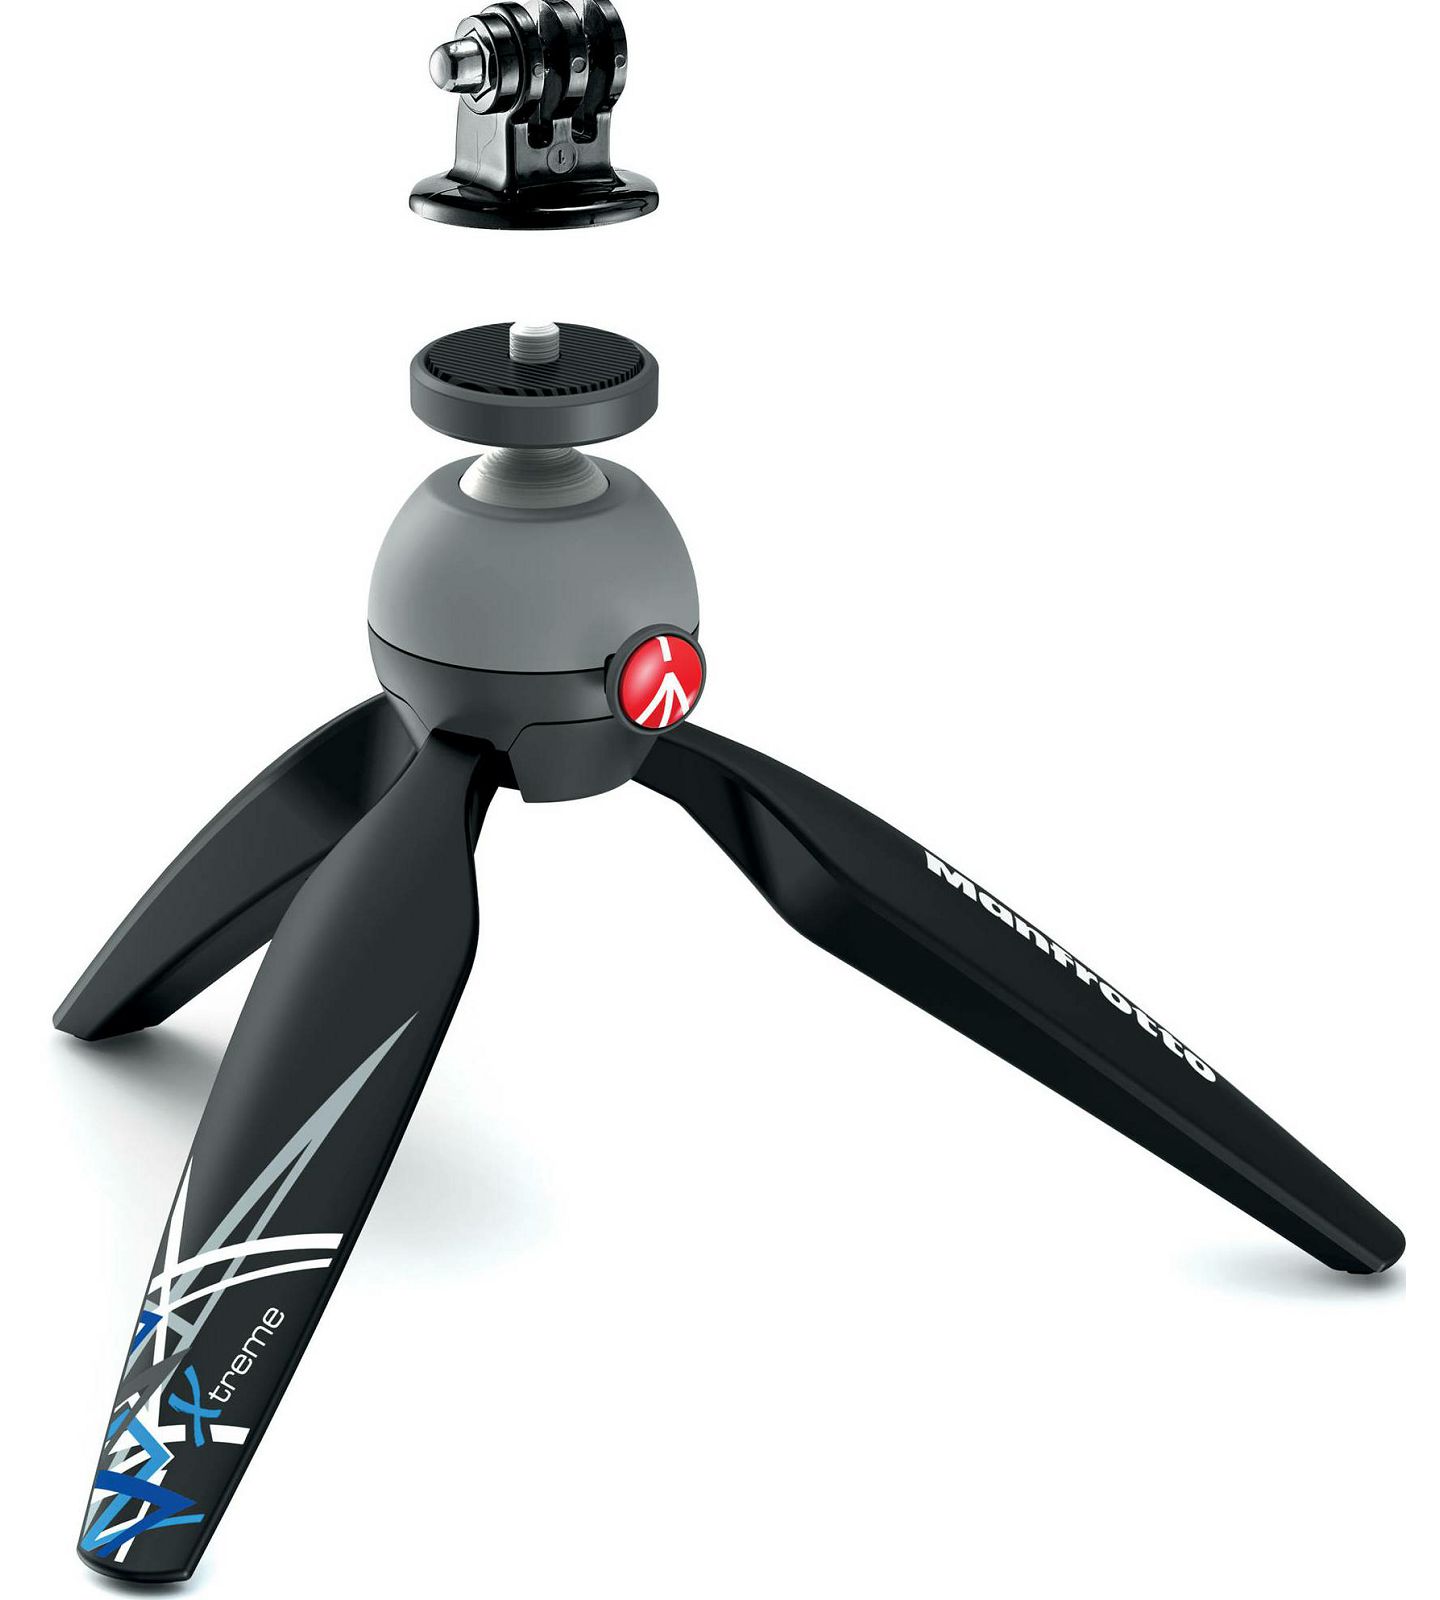 Manfrotto Pixi Mini Xtreme Kit stolni stativ s adapterom za GoPro akcijske kamere (MKPIXIEX-BK)